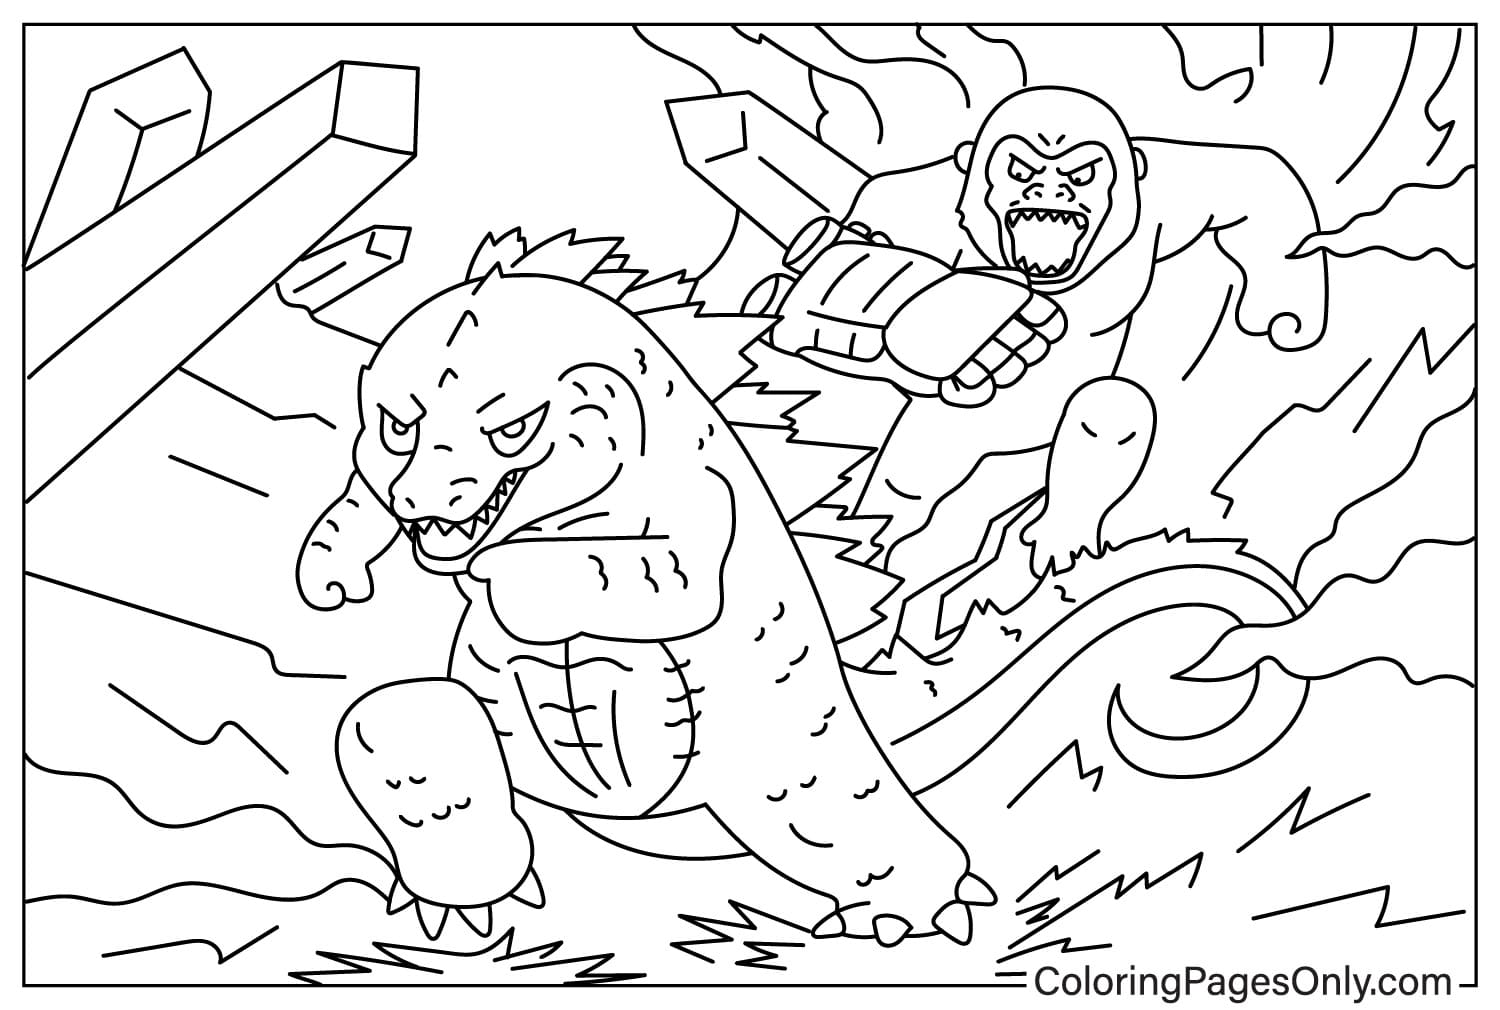 Godzilla x Kong- ورقة تلوين الإمبراطورية الجديدة من Godzilla x Kong: الإمبراطورية الجديدة